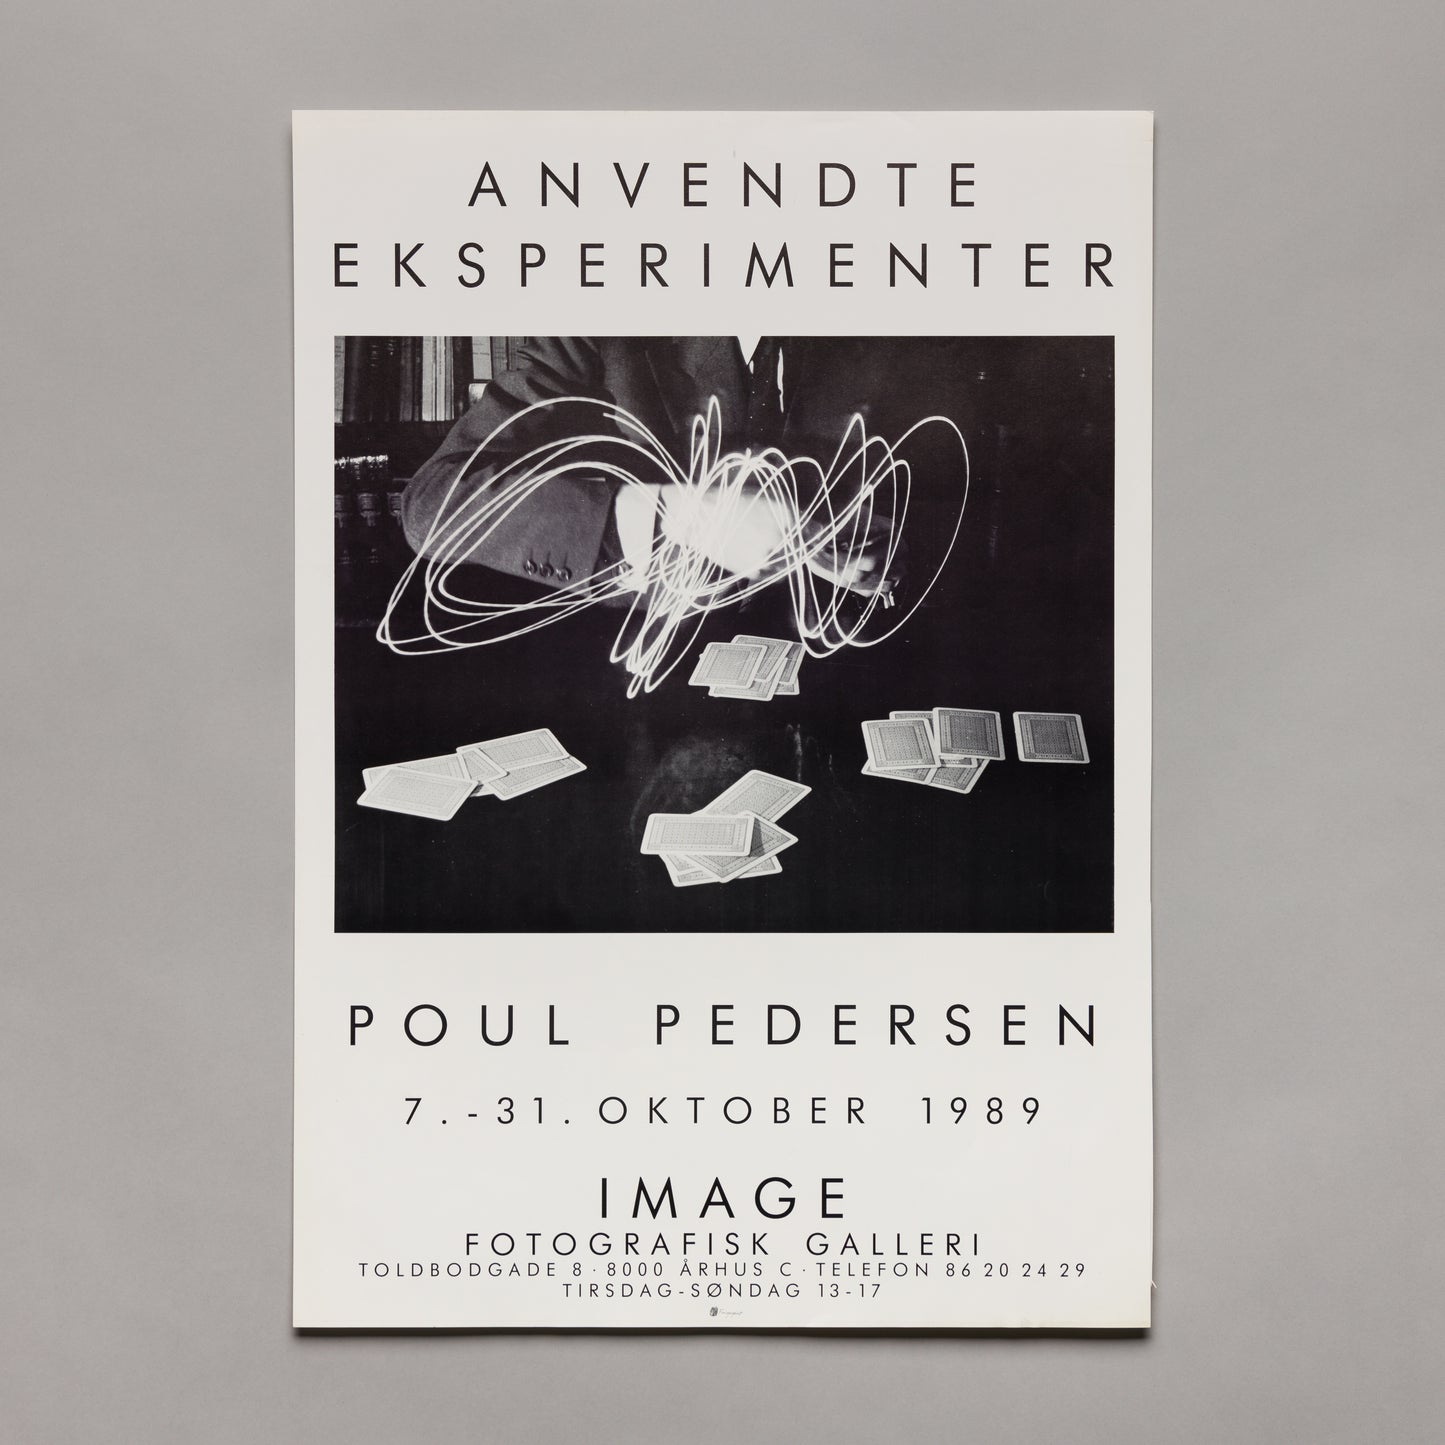 Poul Pedersen, Anvendte eksperimenter, 1989 — poster